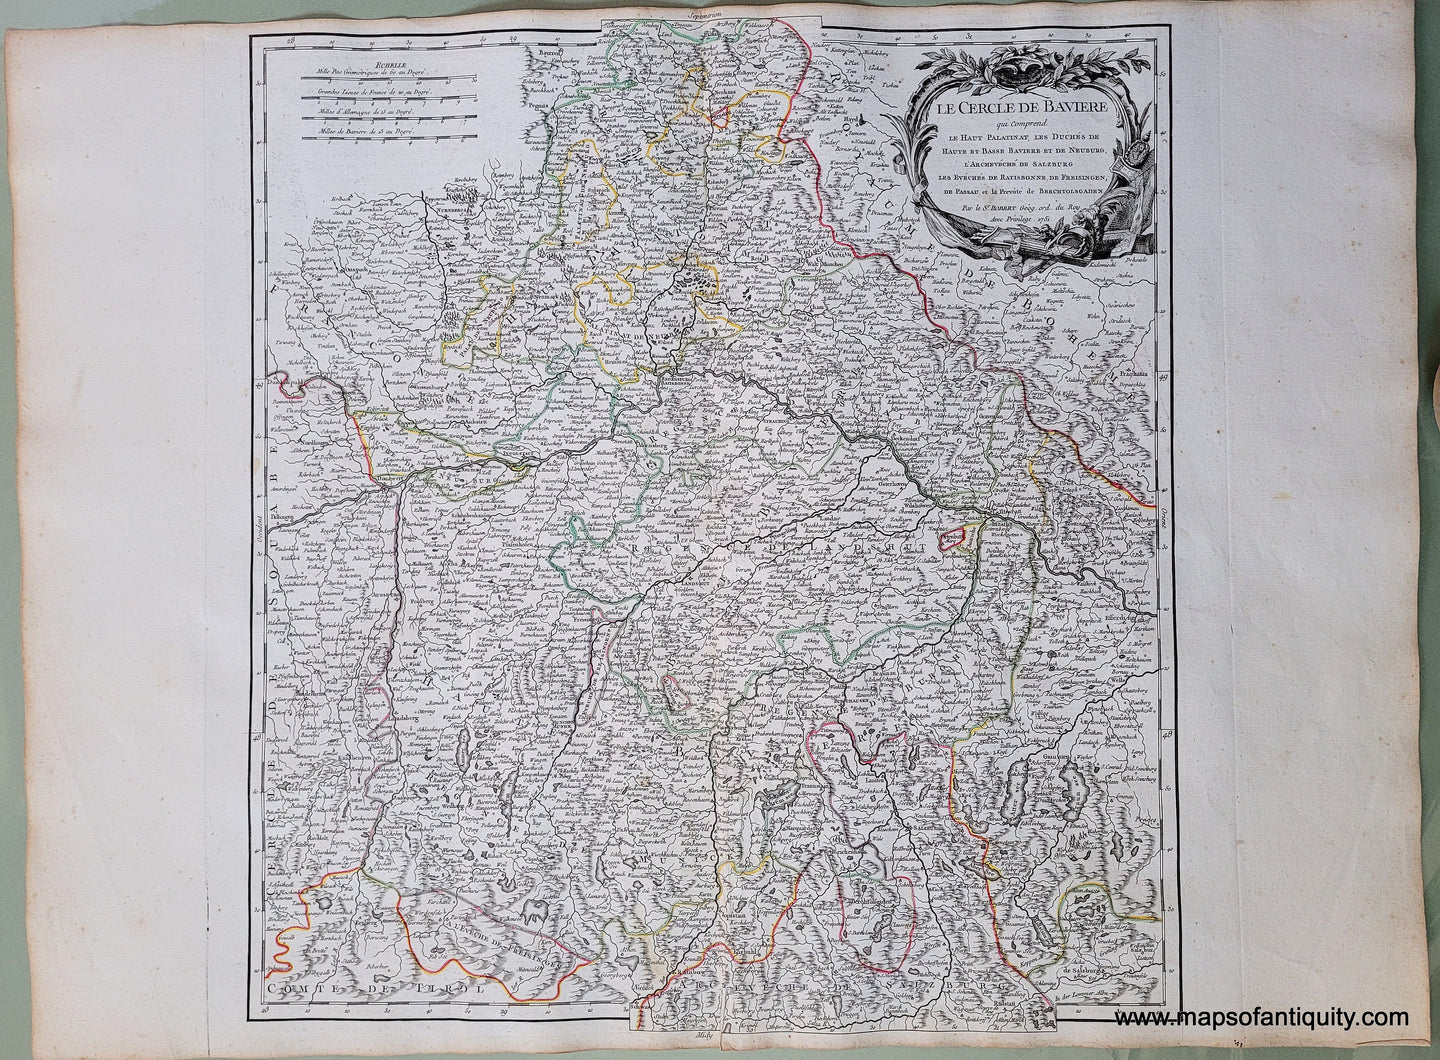 Antique-Hand-Colored-Map-Le-Cercle-de-Baviere-Europe-Bavaria-Germany-Austria-1757-Vaugondy-Maps-Of-Antiquity